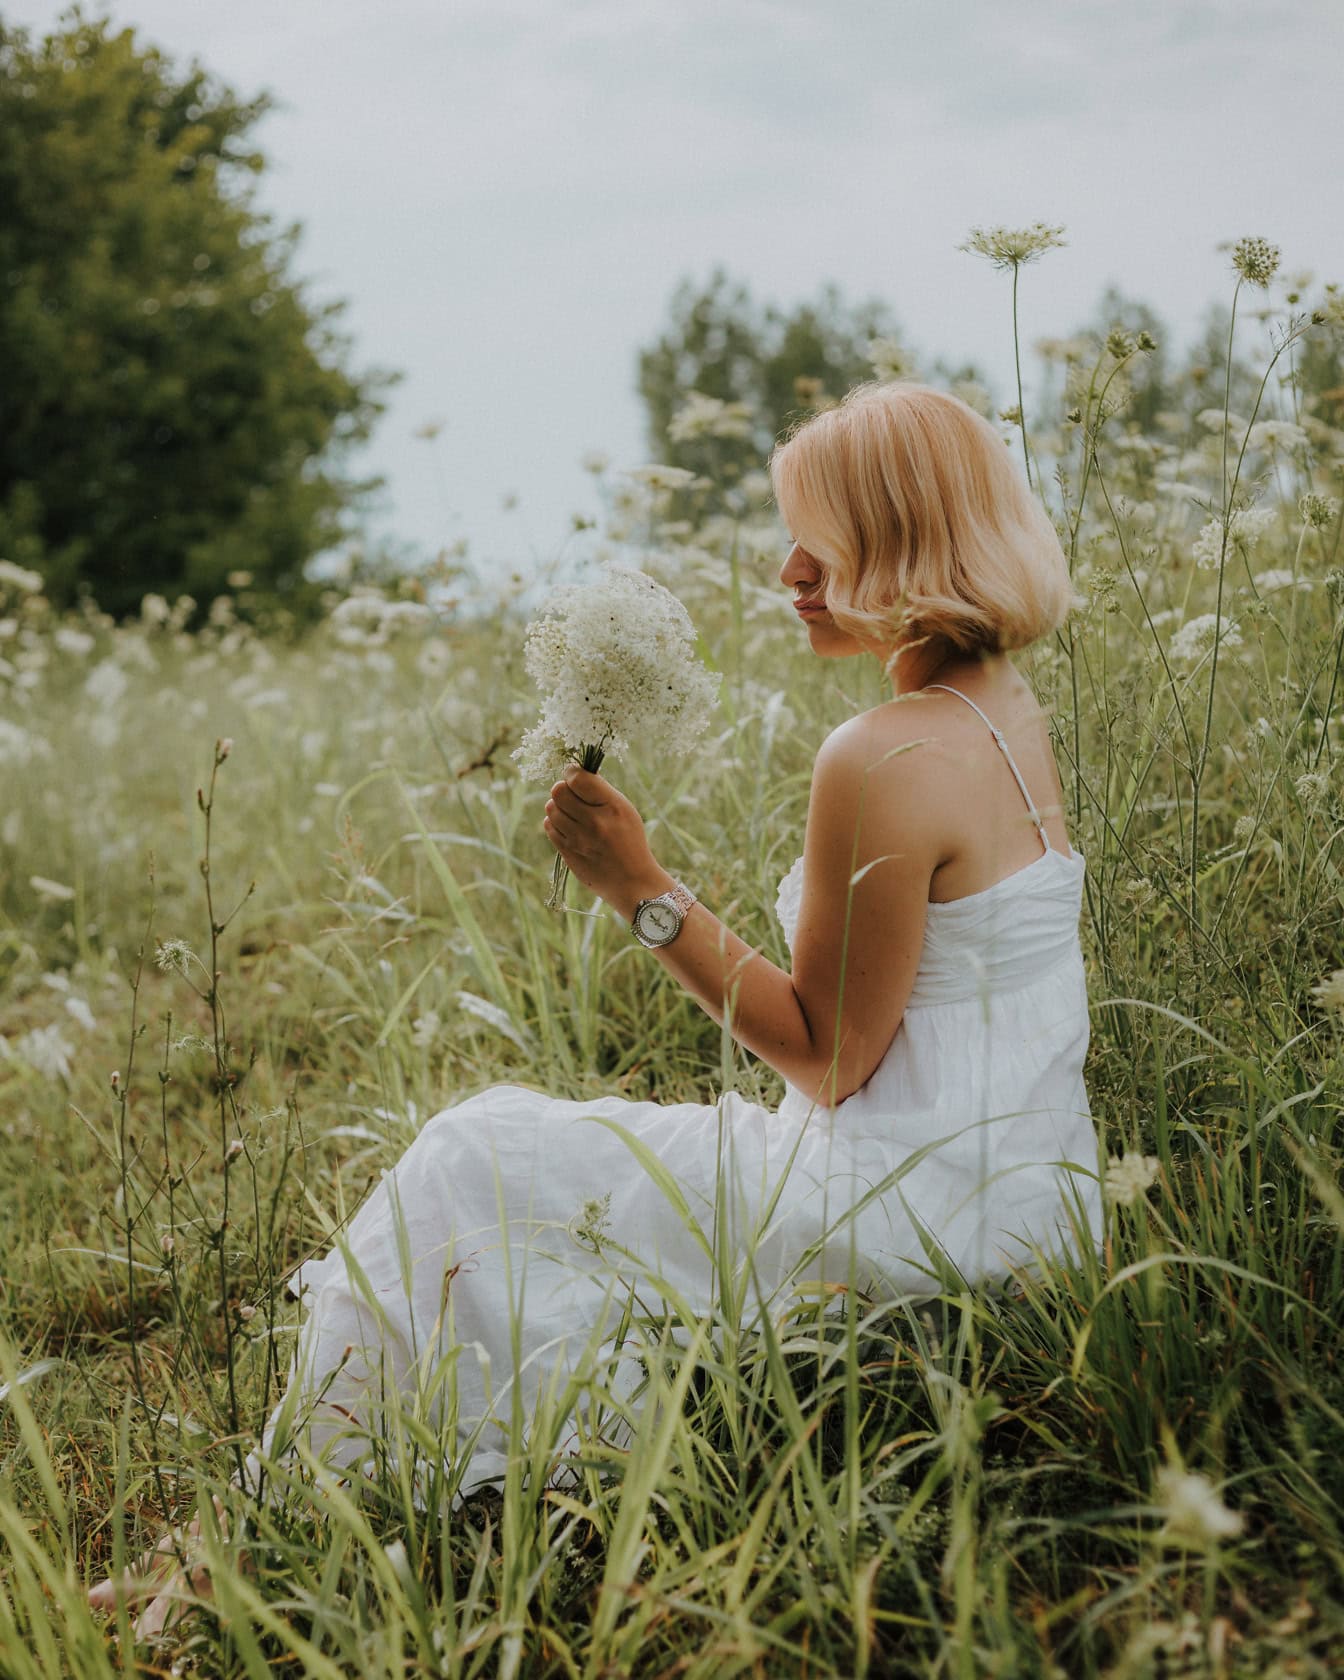 Hyvännäköinen vaalea morsian maalaistyylisessä hääpuvussa istuu niityllä ja poimii valkoisia luonnonkukkia